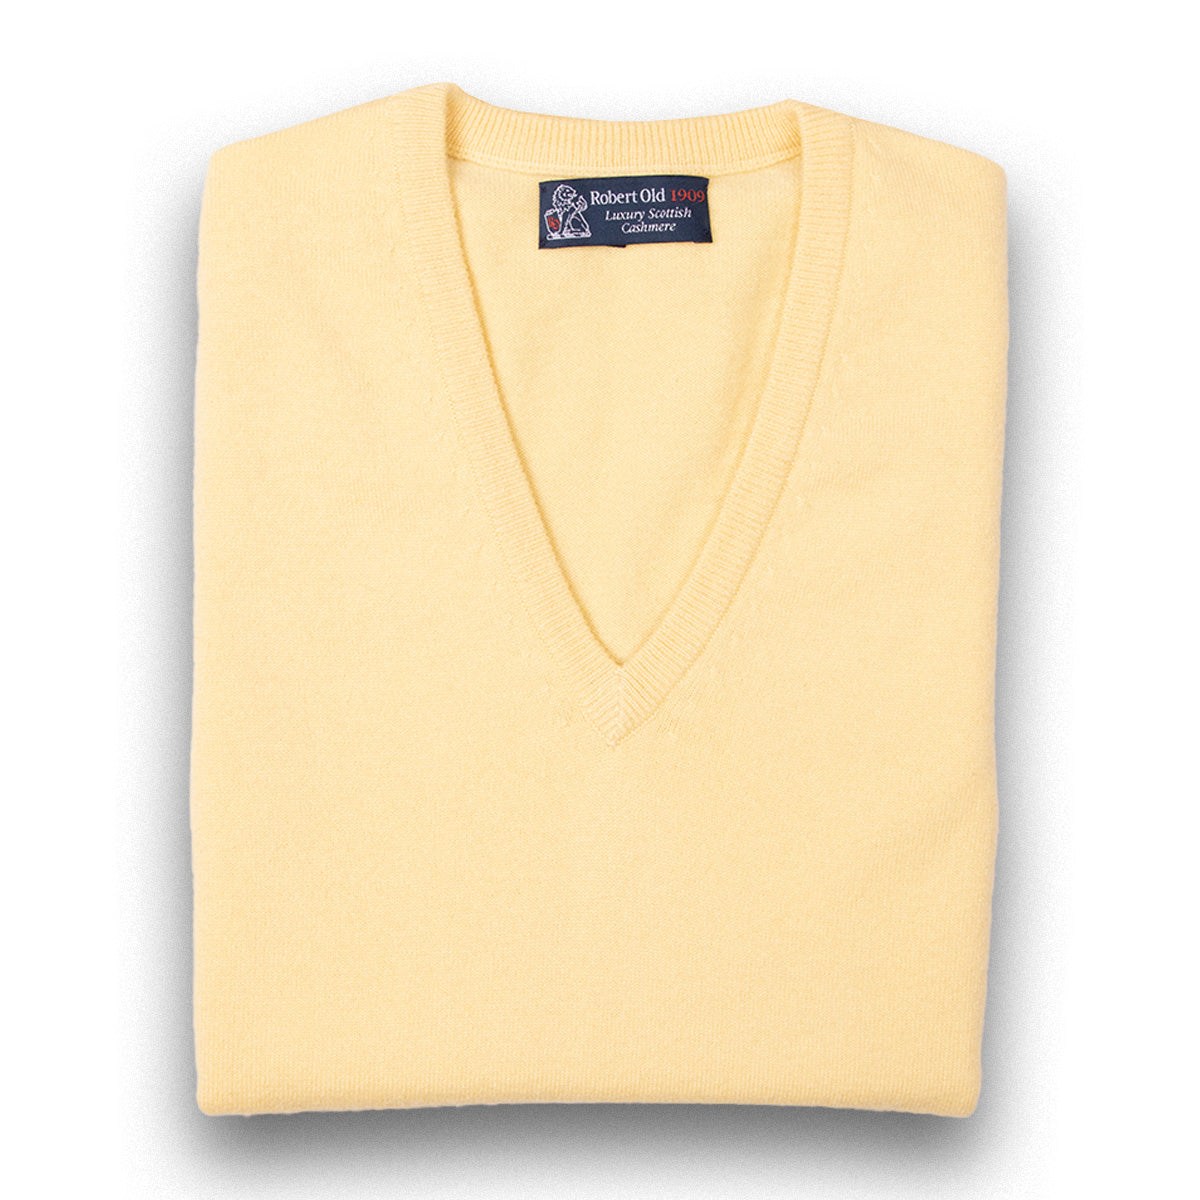 Lemon Frost Blenheim Cashmere Sleeveless V-Neck Sweater  Robert Old Lemon Frost UK 36" 